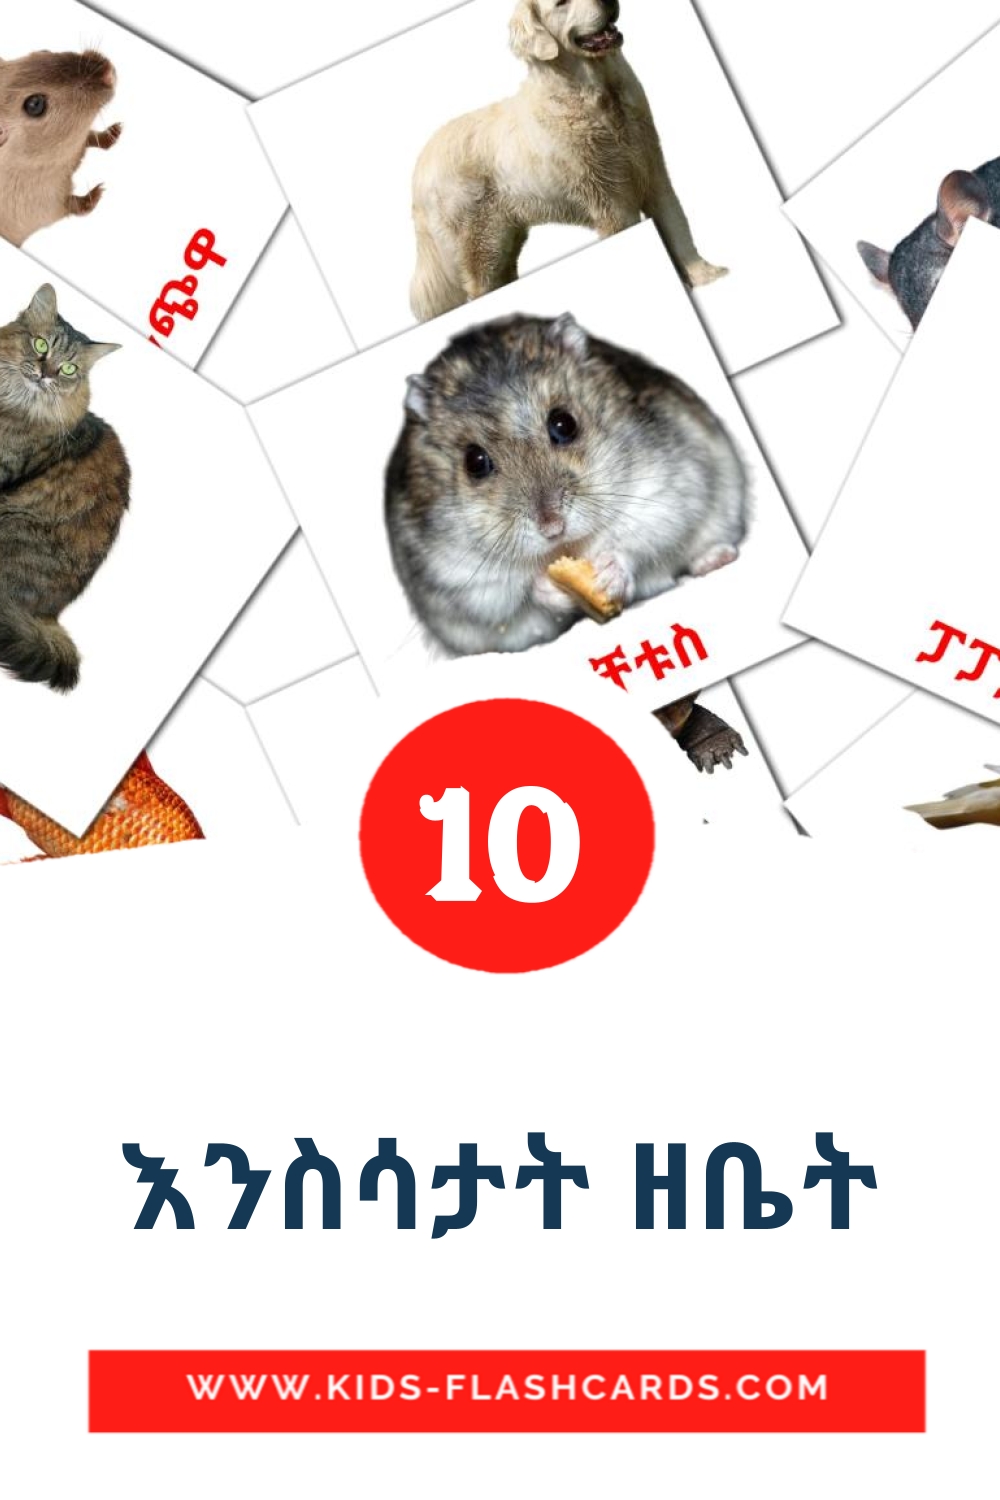 10 carte illustrate di እንስሳታት ዘቤት per la scuola materna in tigrigna(Eritrea)